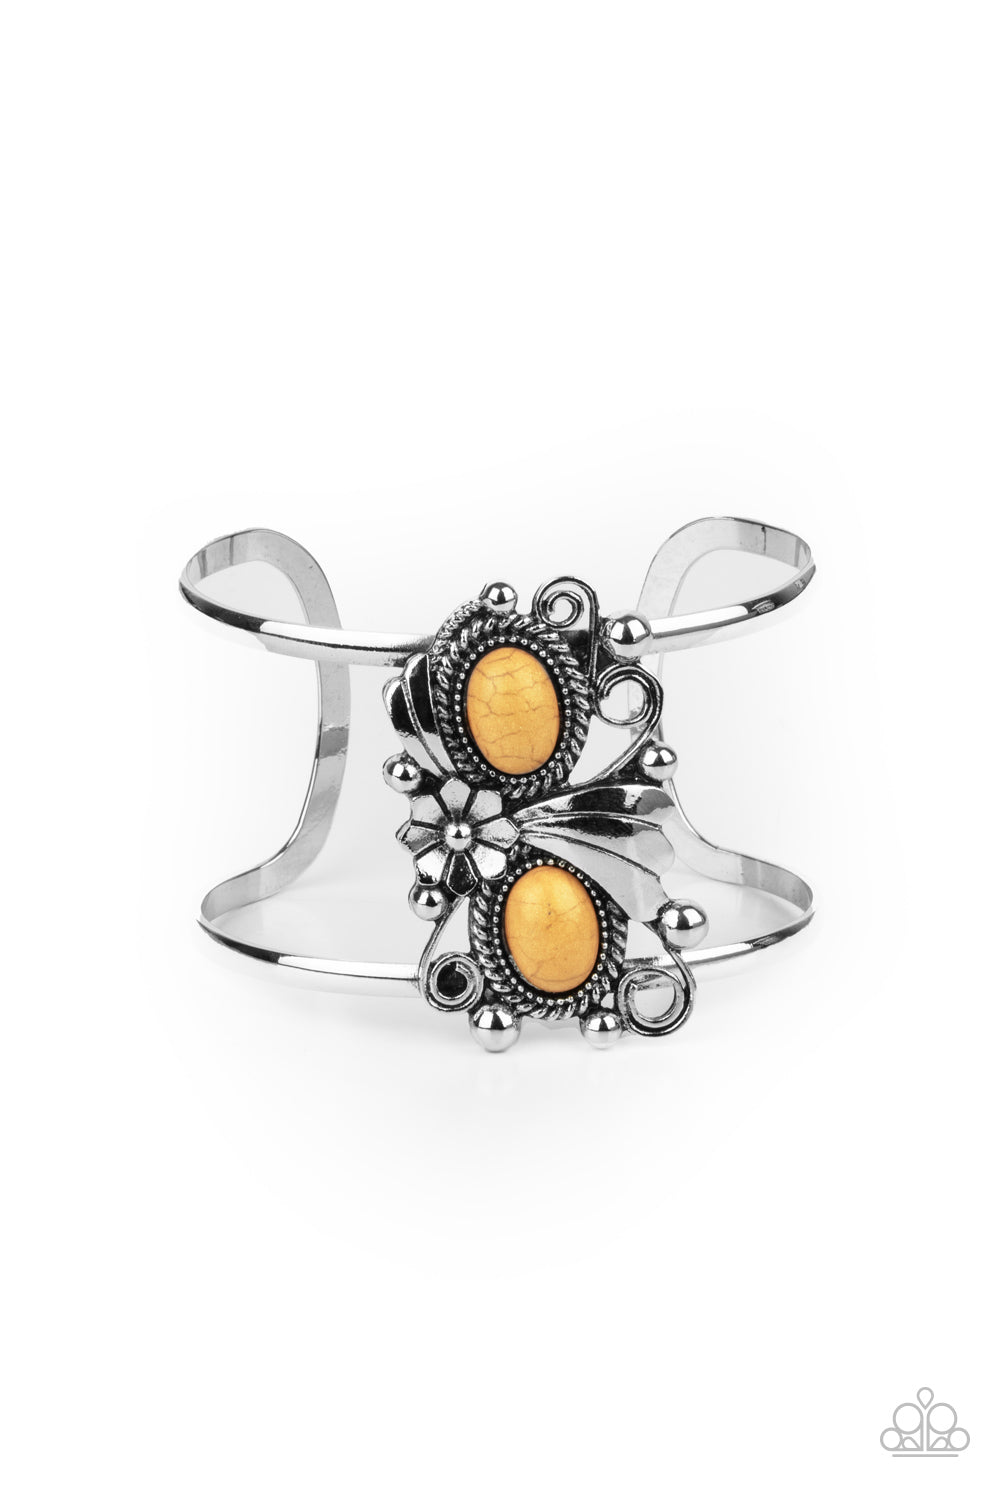 Paparazzi Mojave Flower Girl - Yellow Stones - Bracelet - $5 Jewelry with Ashley Swint